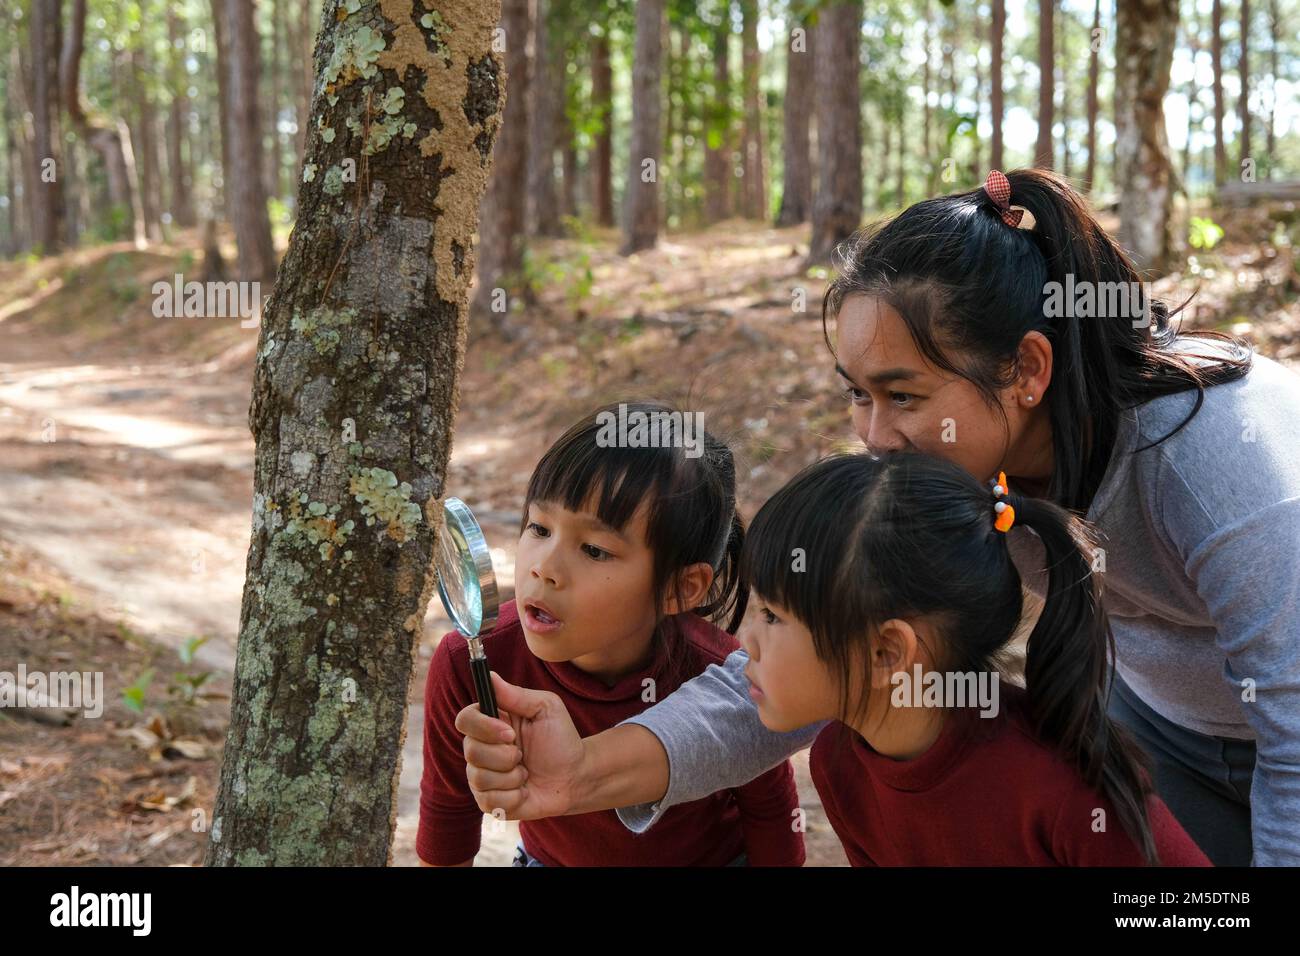 Felice madre e figlia esplorando e utilizzando la lente di ingrandimento per osservare gli insetti sul tronco dell'albero nella foresta. Famiglia felice in vacanza nella natura. Foto Stock